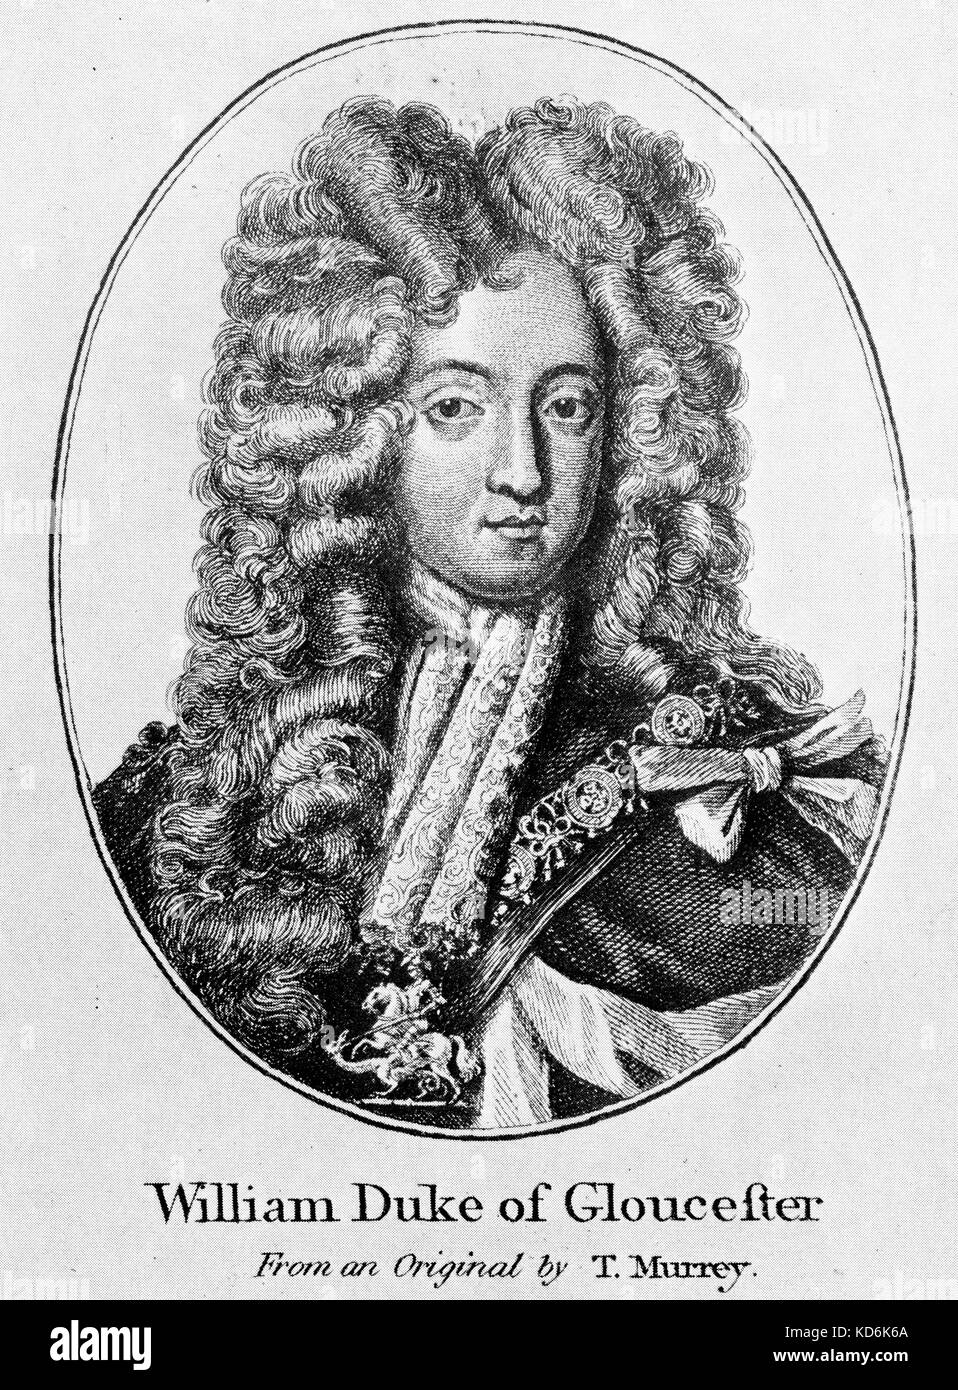 William Duque de Gloucester (1689-1700) a partir de un original por T. Murrey. Firmado por William. Purcell conexión. Foto de stock